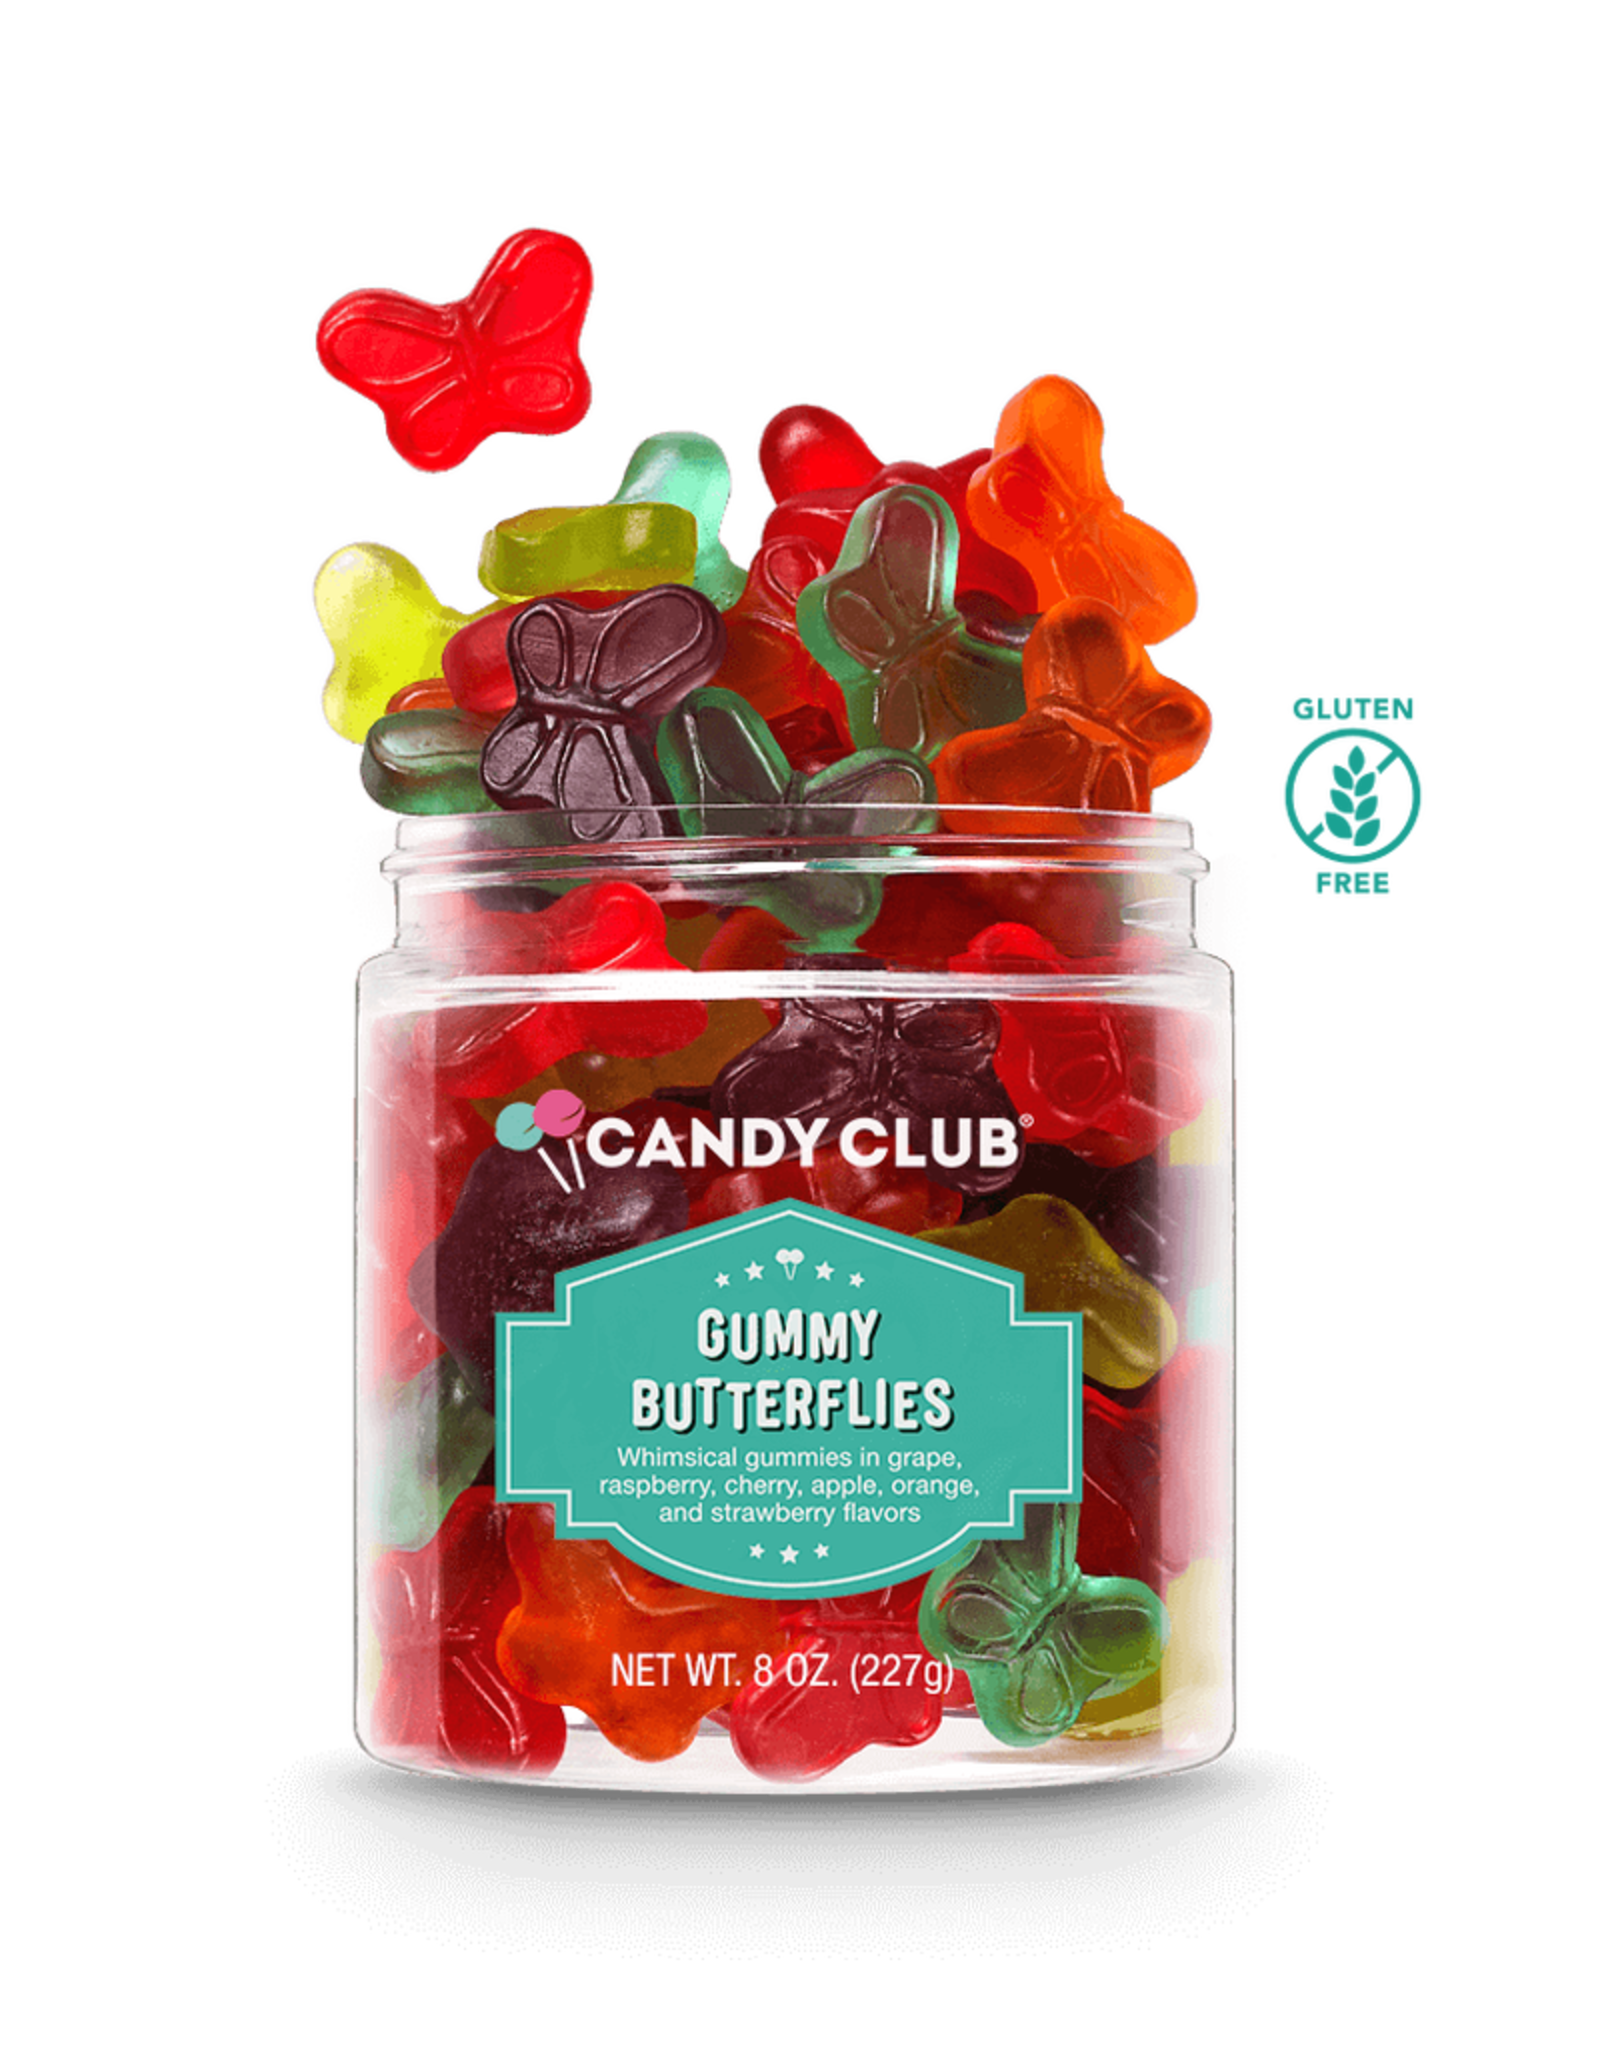 Candy Club gummy butterflies